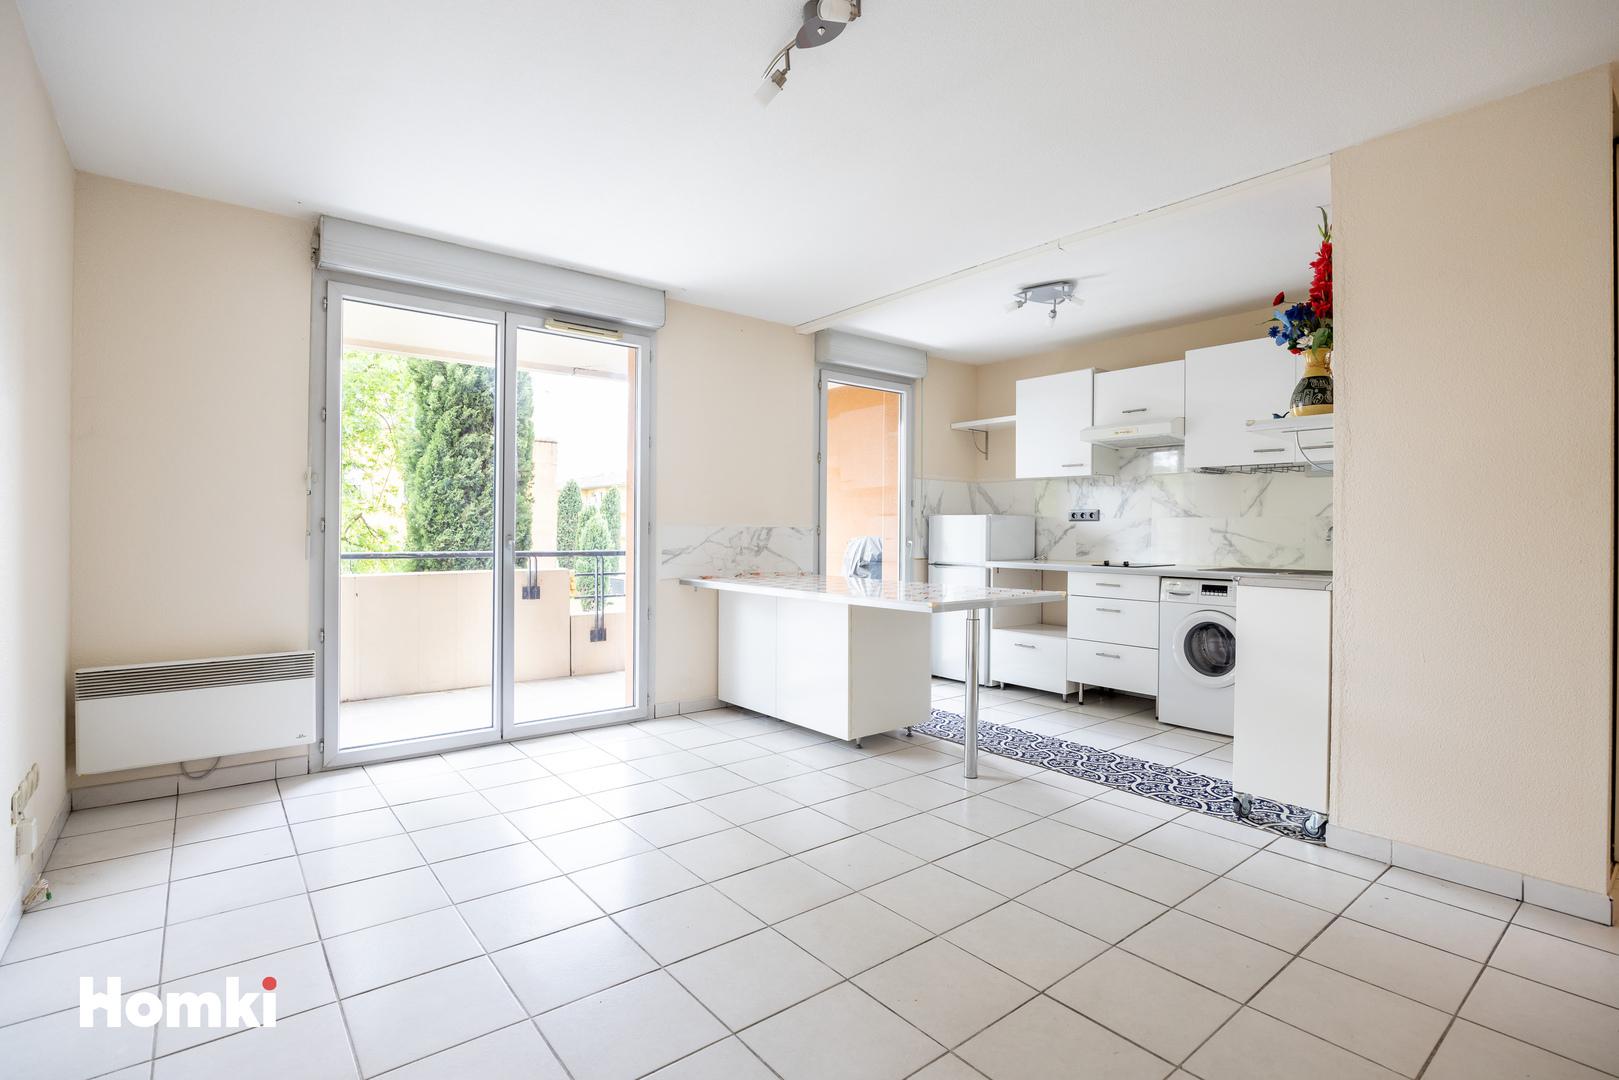 Homki - Vente Appartement  de 45.0 m² à Toulouse 31200